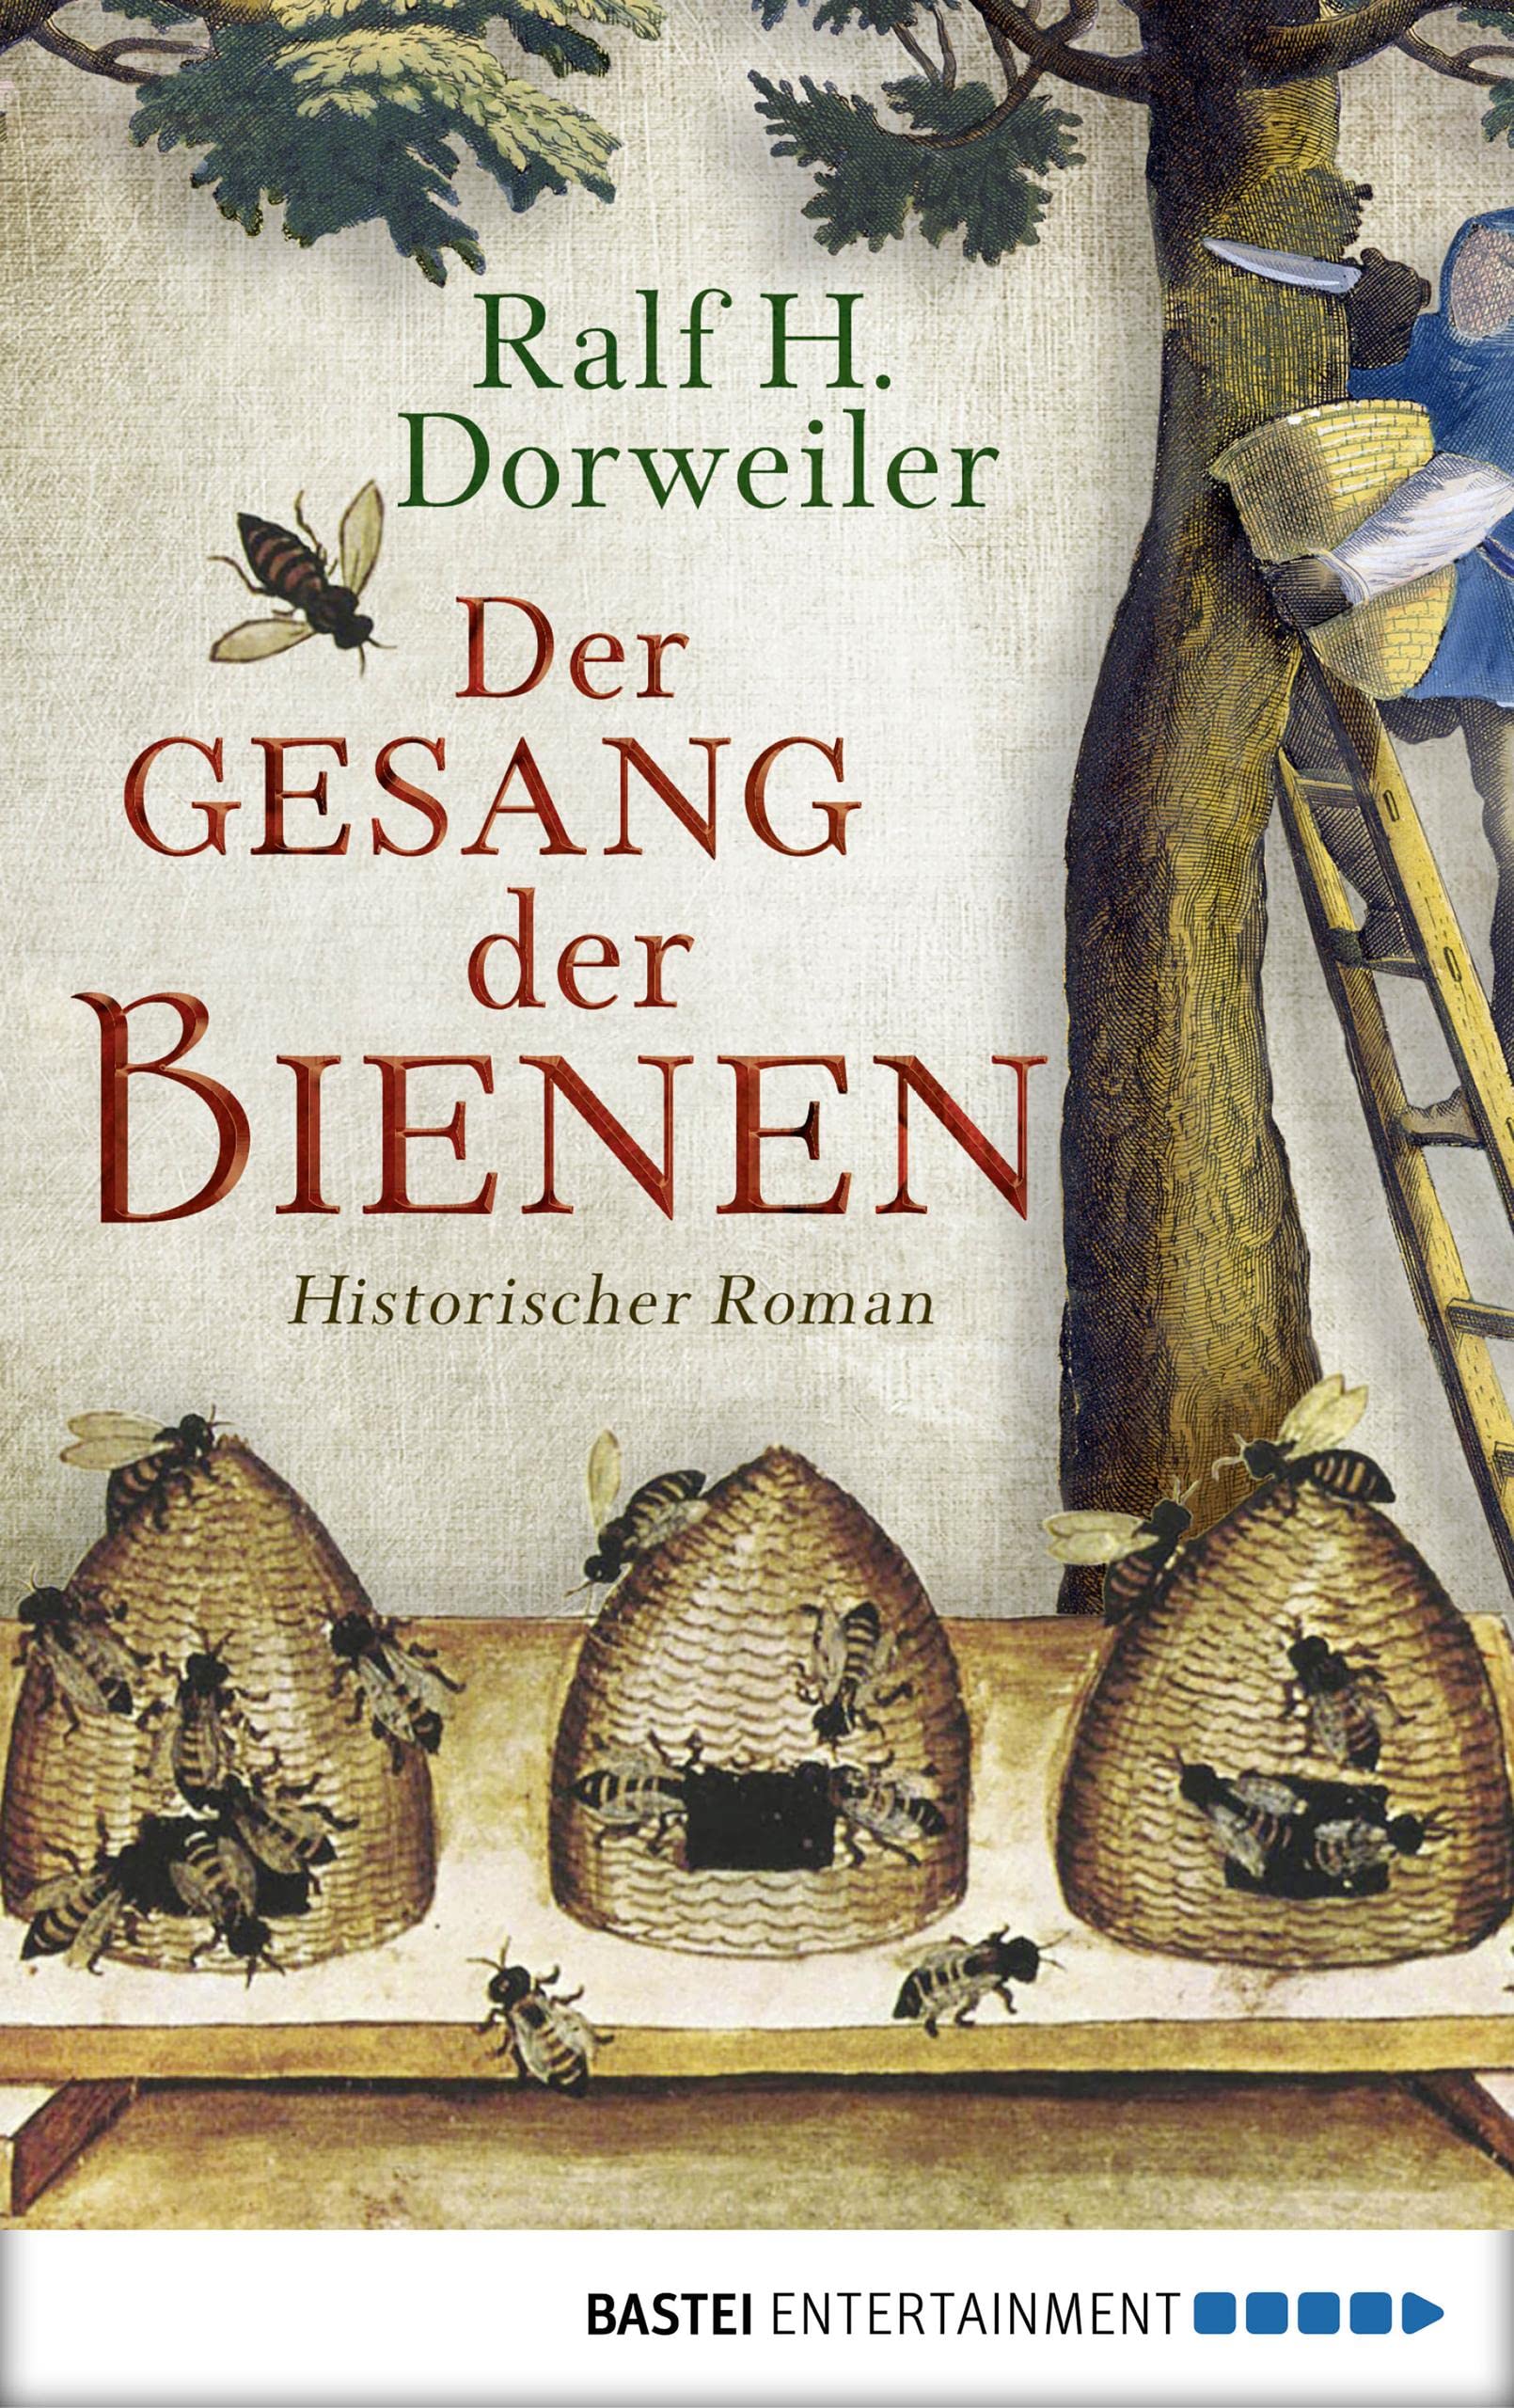 Der Gesang der Bienen: Historischer Roman (German Edition)